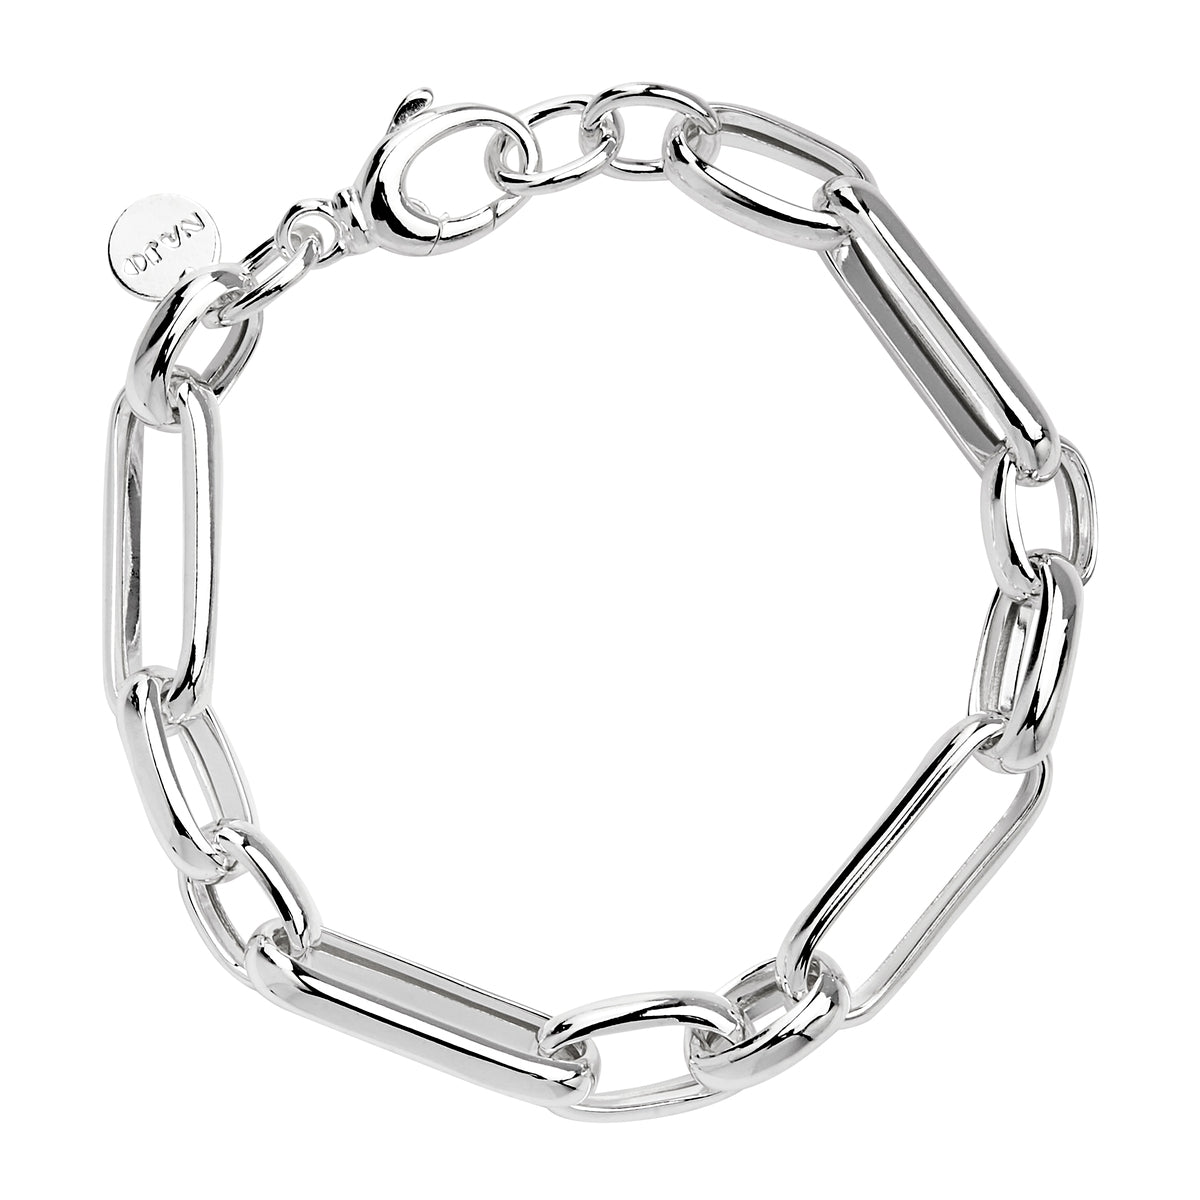 Najo B6755 Verona Bracelet Silver